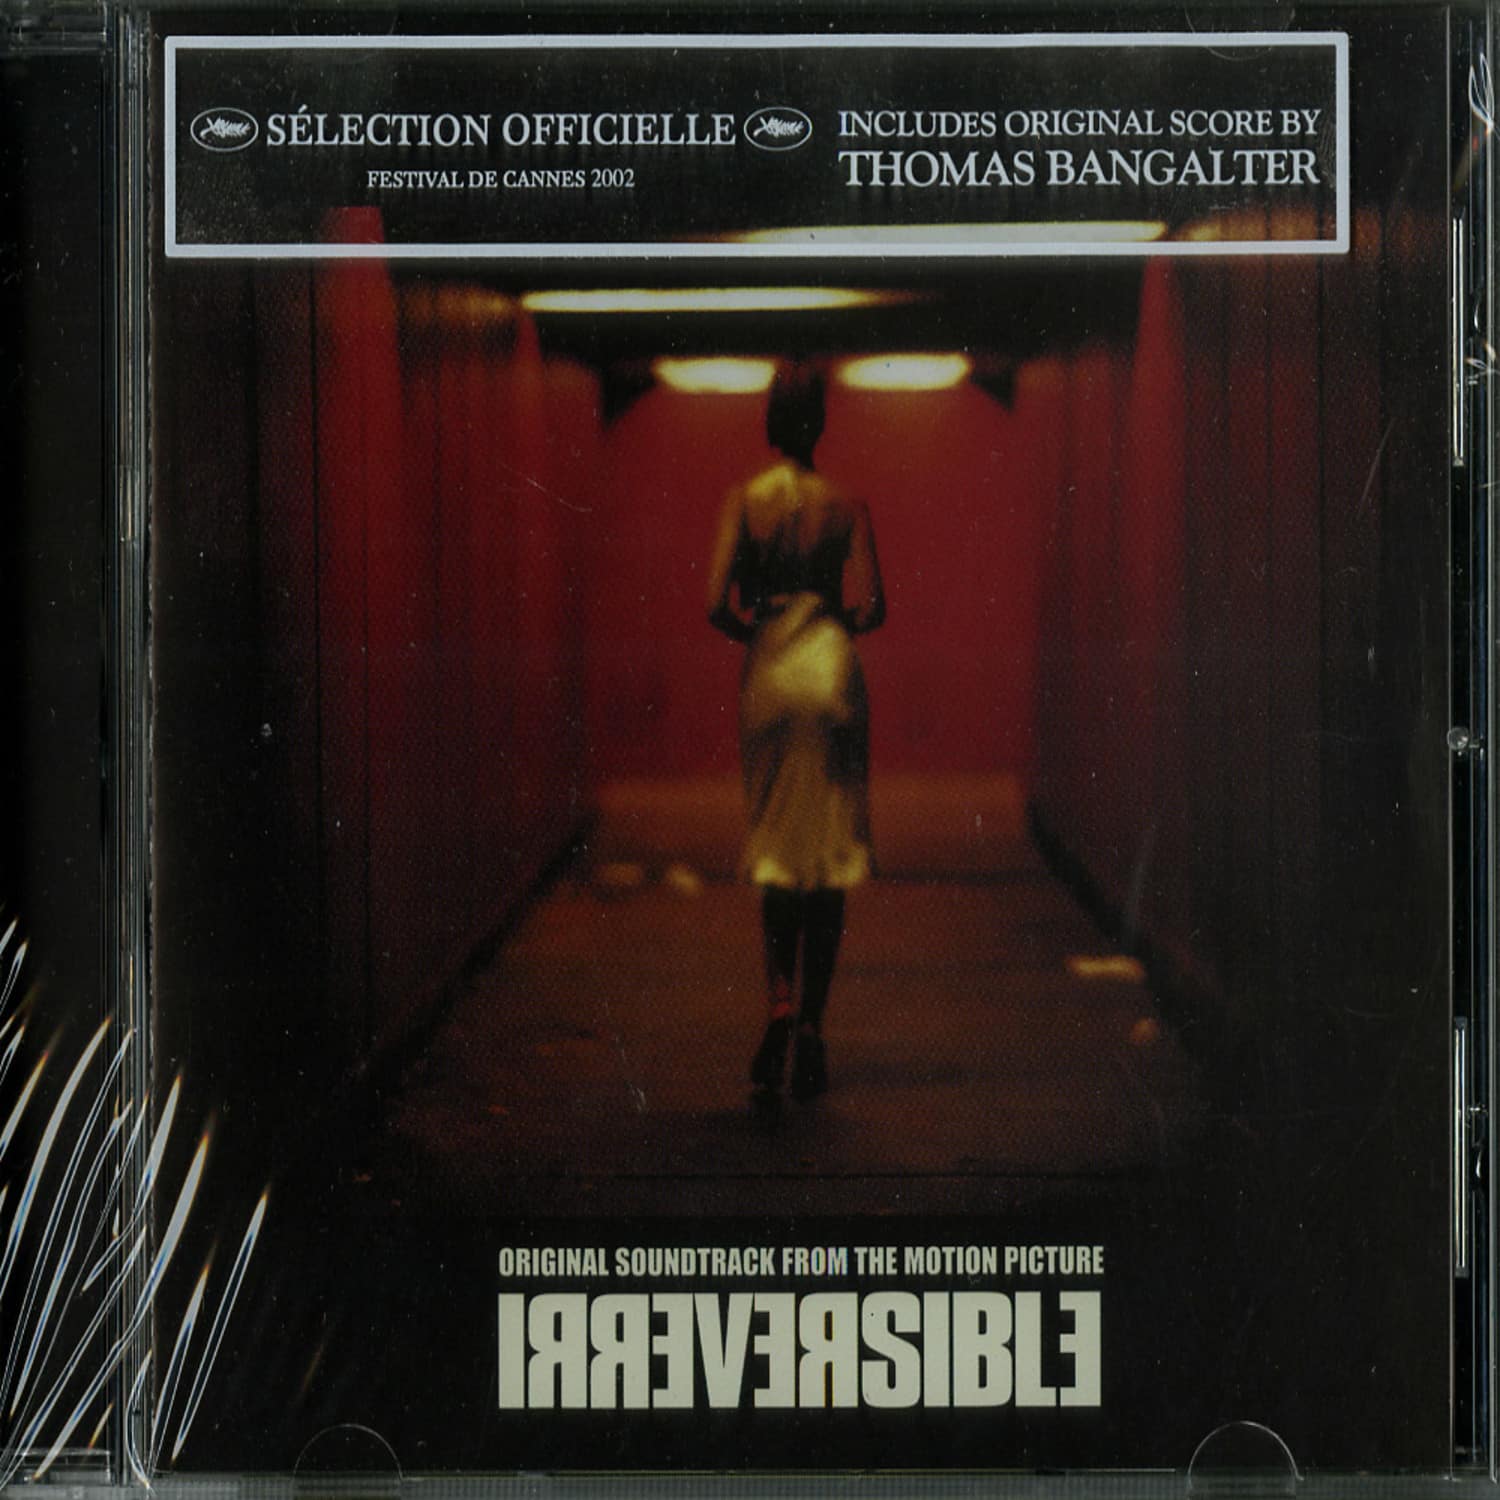 Thomas Bangalter - IRREVERSIBLE SOUNDTRACK 